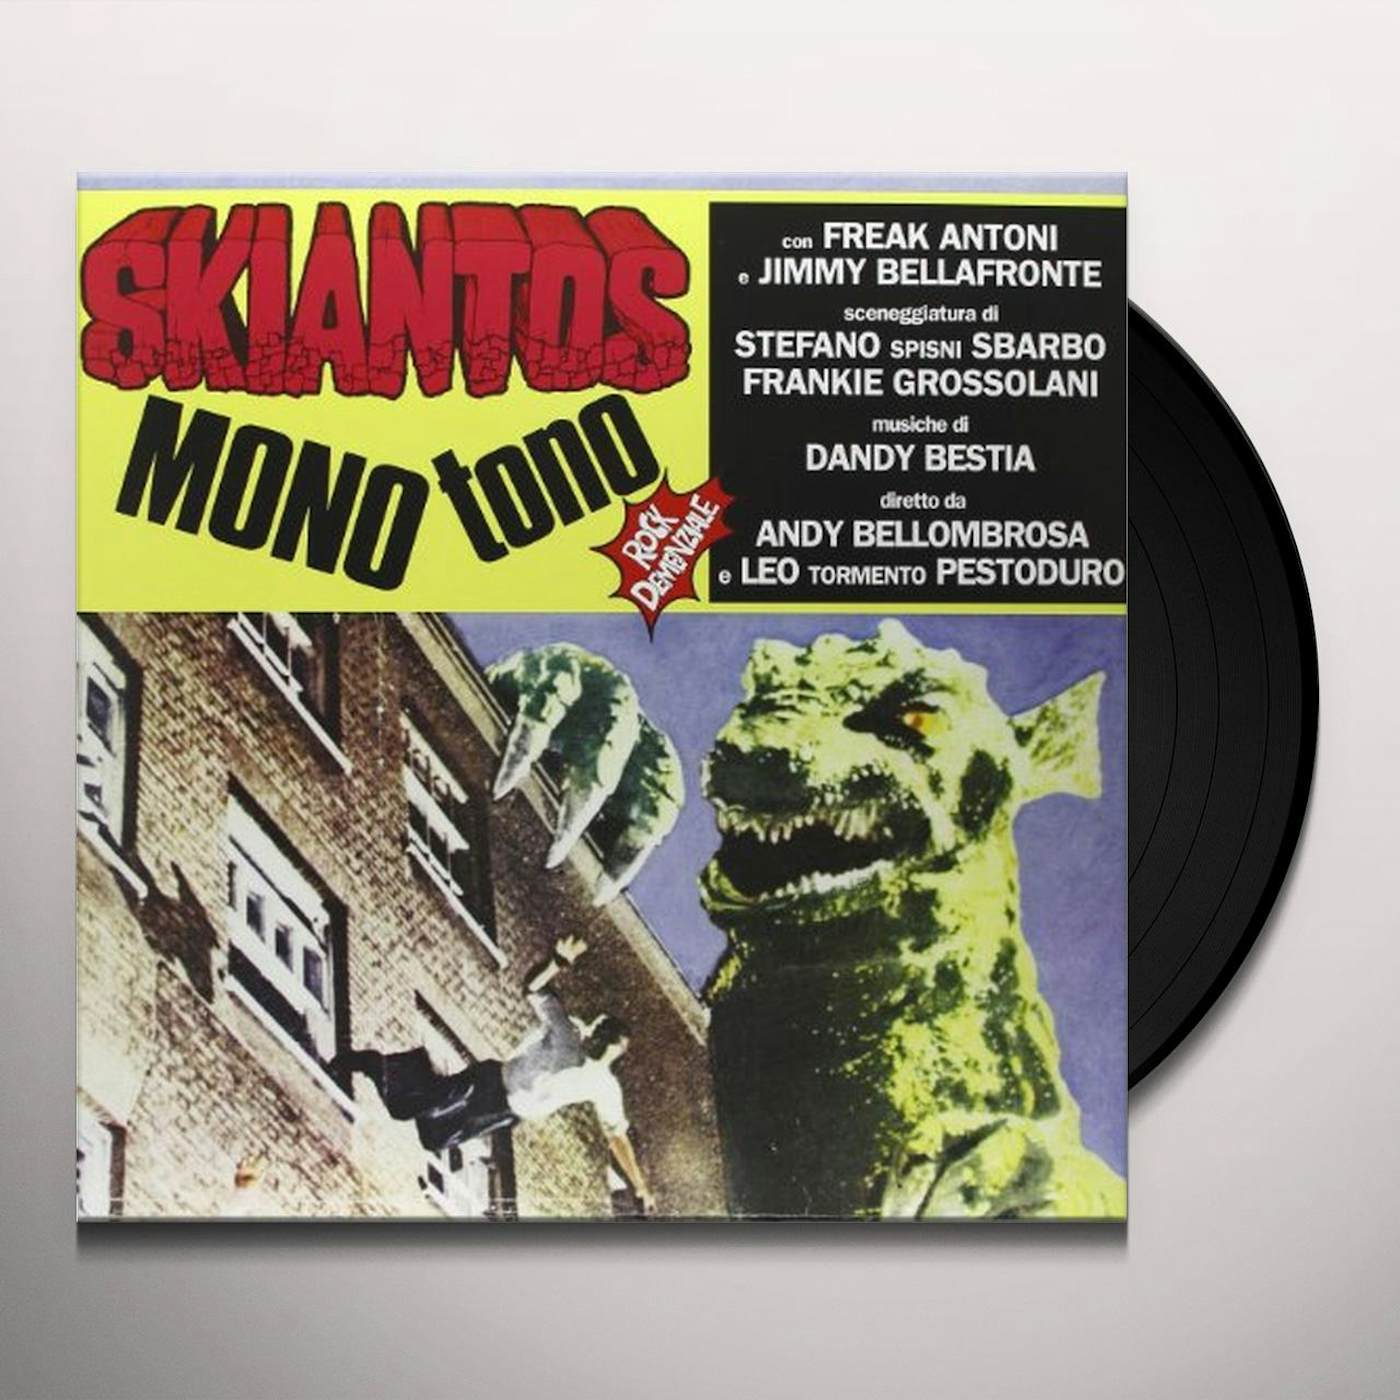 Skiantos Mono Tono Vinyl Record